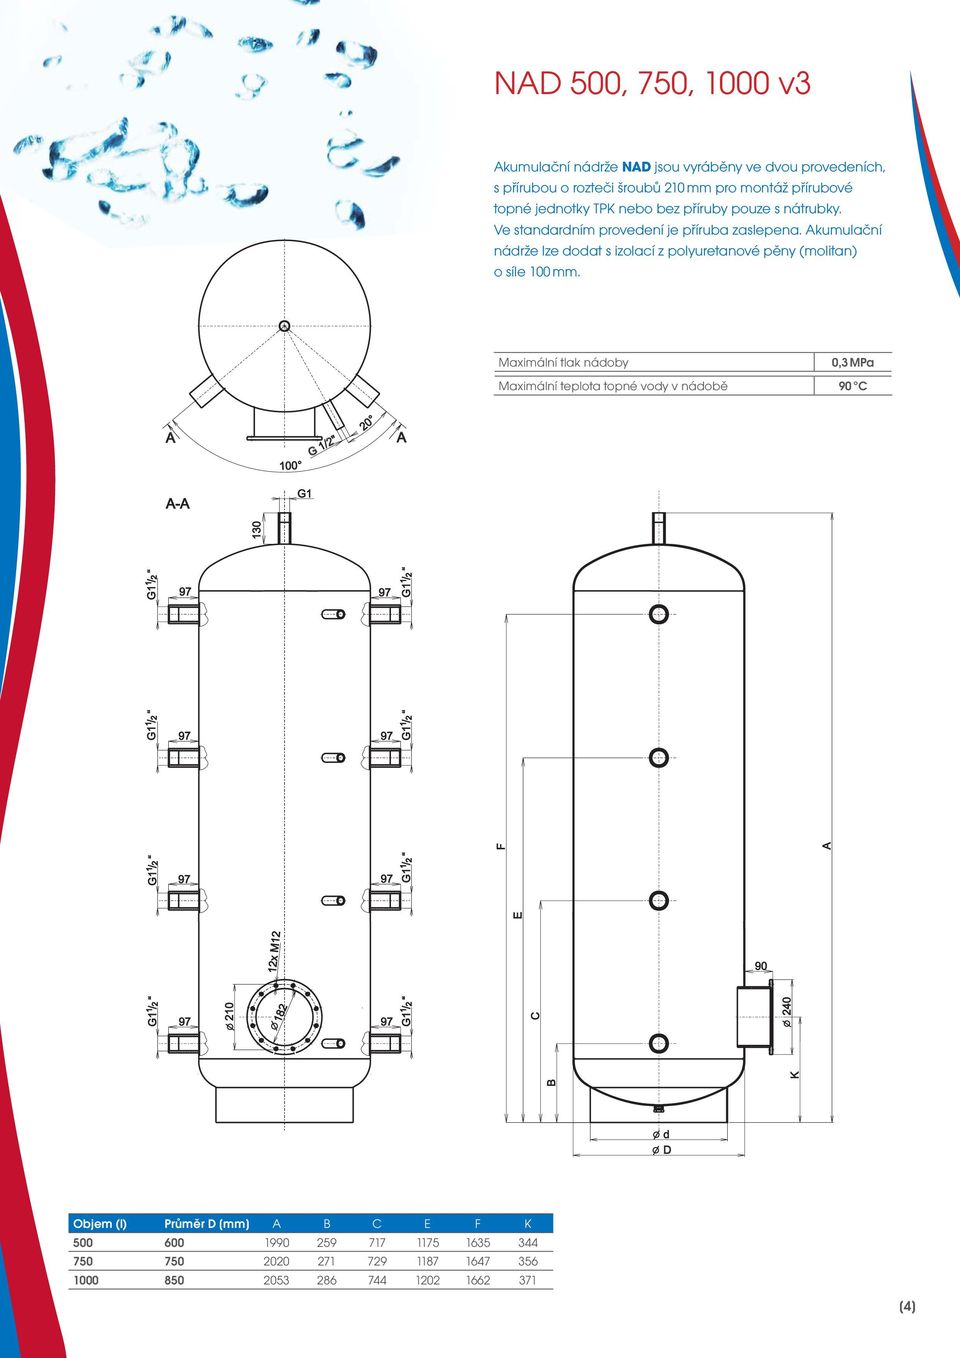 Akumulační nádrže lze dodat s izolací z polyuretanové pěny (molitan) o síle 100 mm.